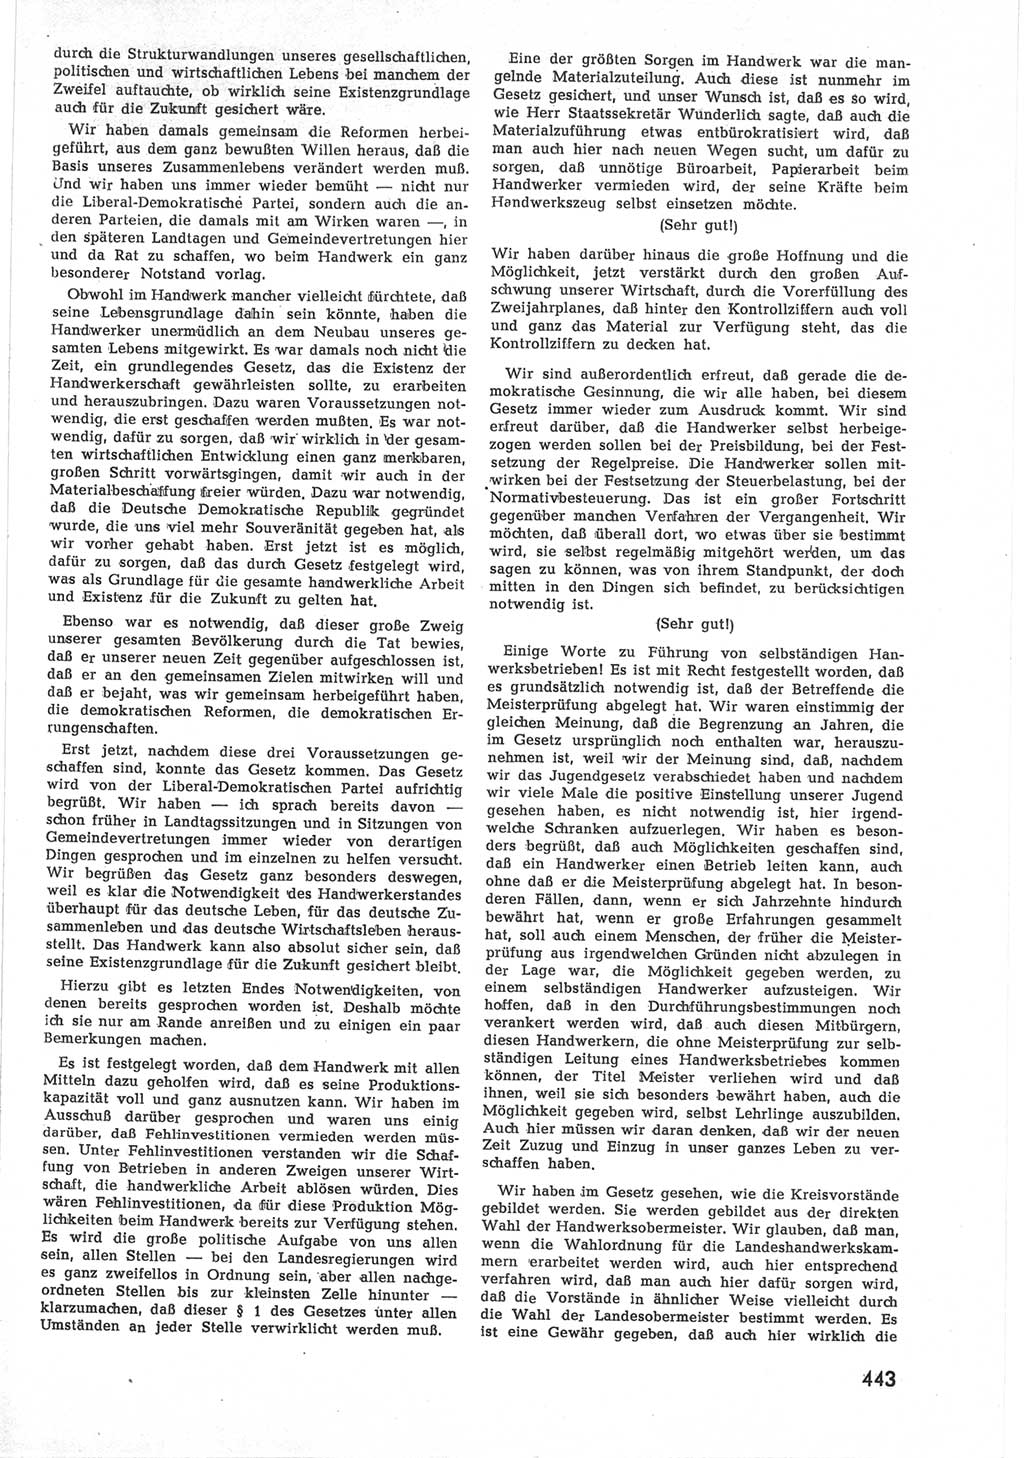 Provisorische Volkskammer (VK) der Deutschen Demokratischen Republik (DDR) 1949-1950, Dokument 461 (Prov. VK DDR 1949-1950, Dok. 461)